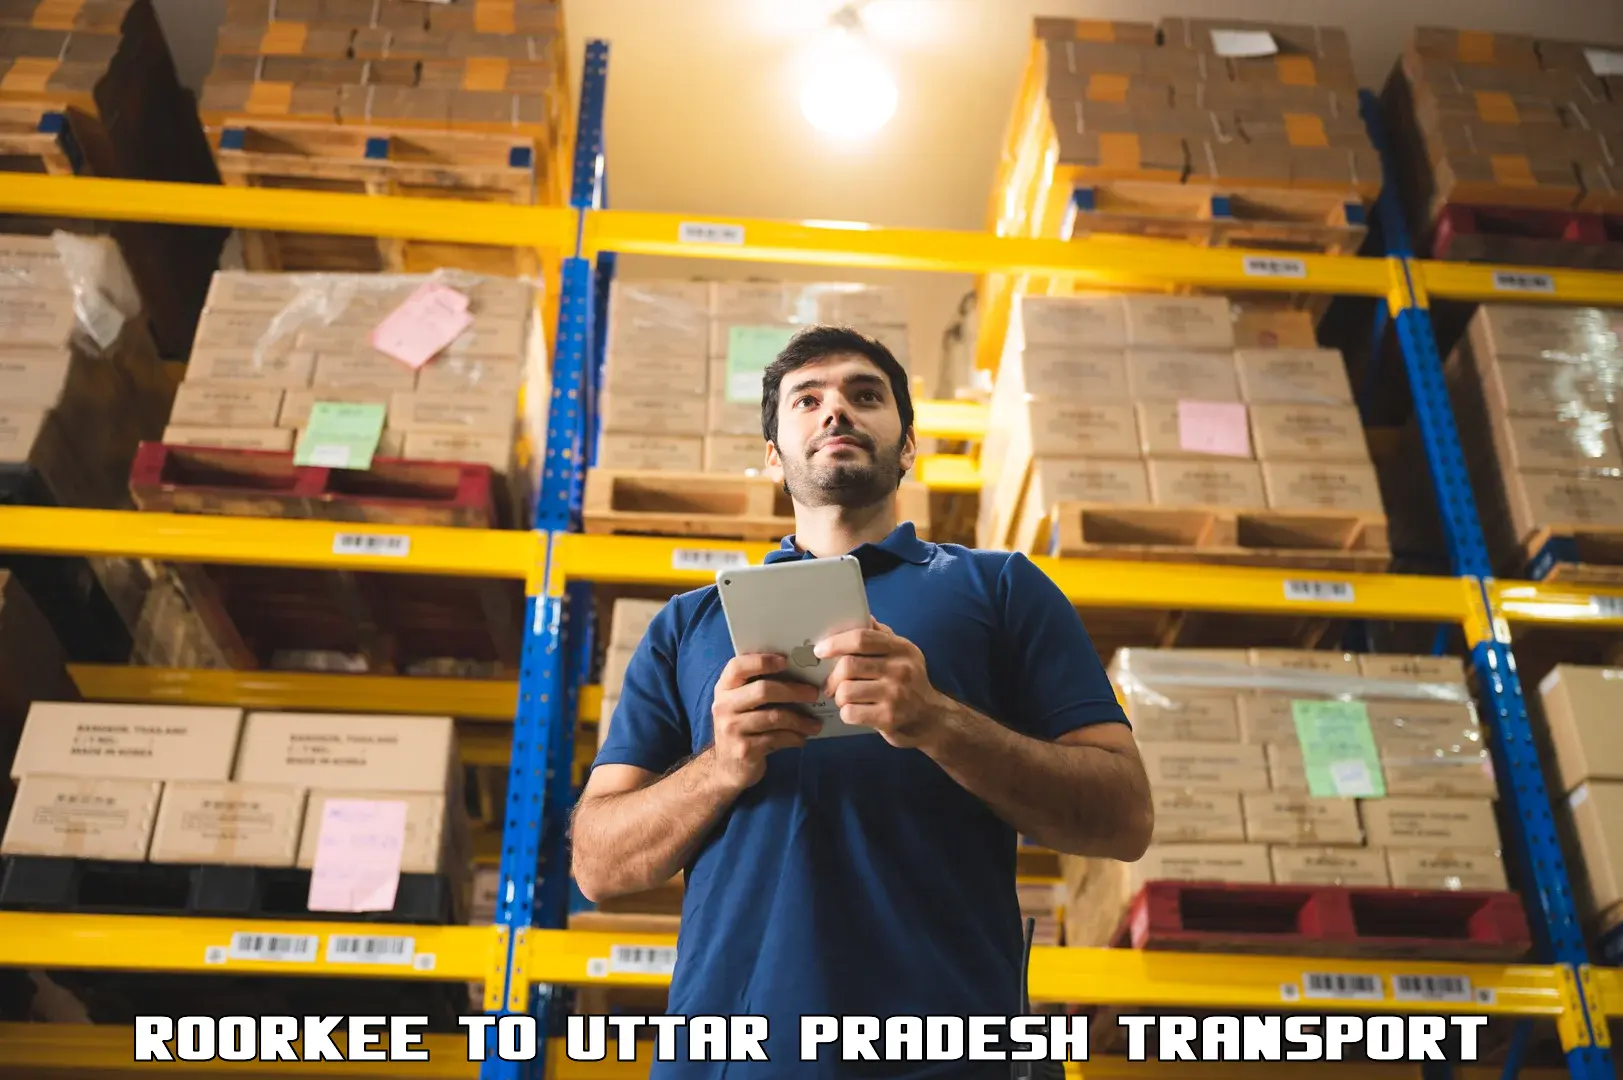 Commercial transport service Roorkee to Uttar Pradesh